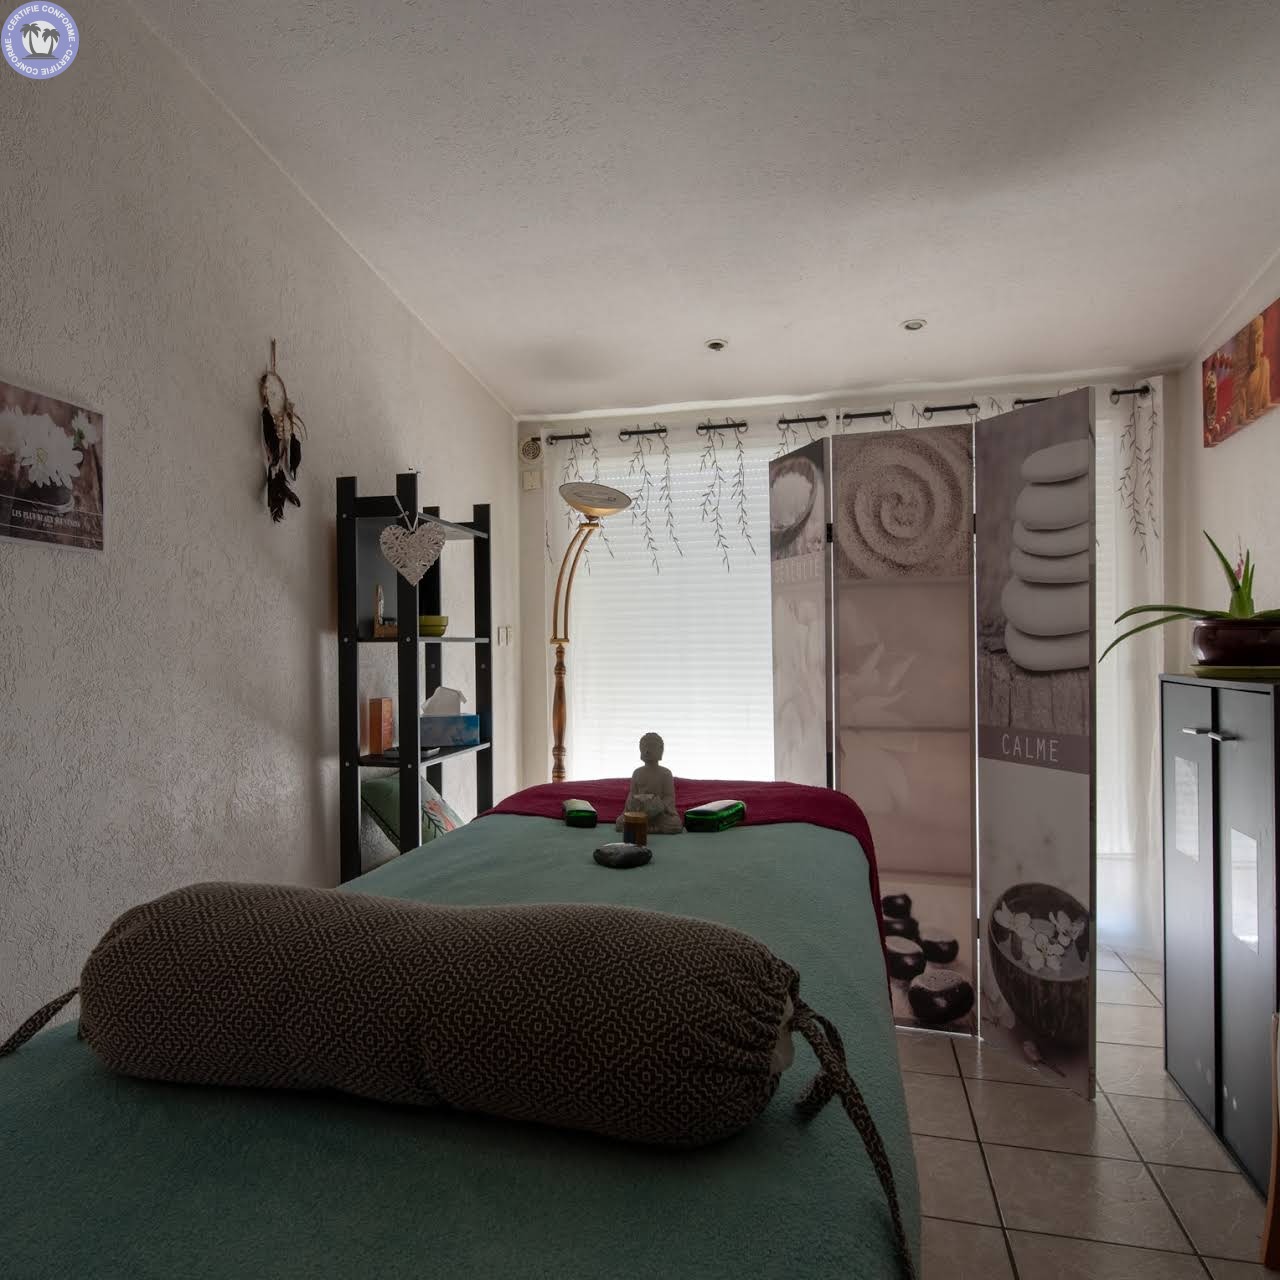 Bien-etre-amp-Massages-Occitanie-Herault-Ma-Quietude-Massage-Relaxation-Relaxation16262736495556697379.jpg